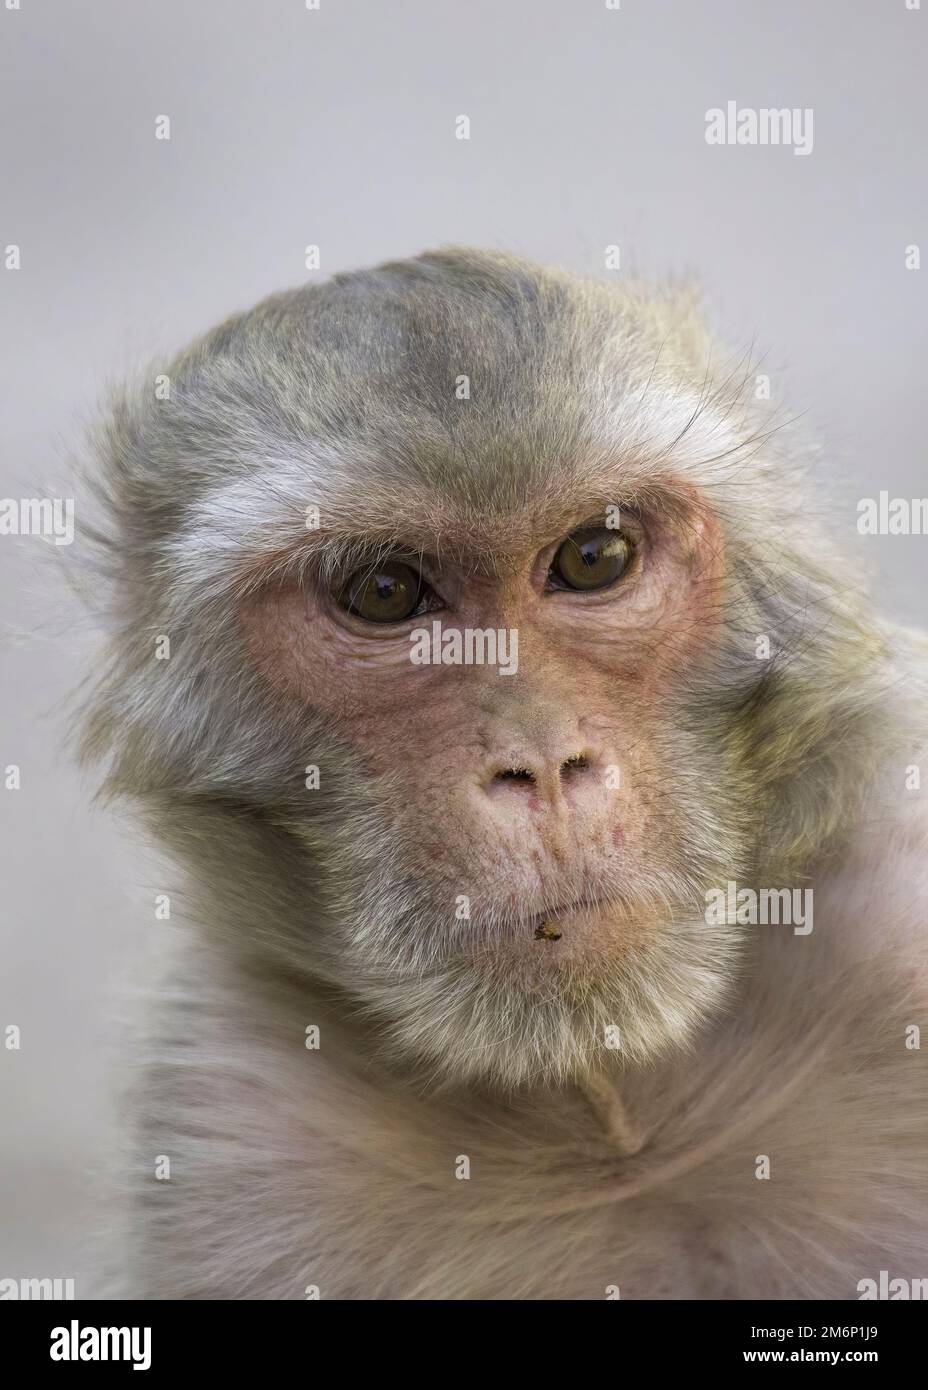 Porträt eines Rhesus-Macaque-Affen in Nahaufnahme des Kopfes mit großen braunen Augen im Gesicht und weißgrauem und braunem Fell mit einfarbigem Hintergrund Stockfoto